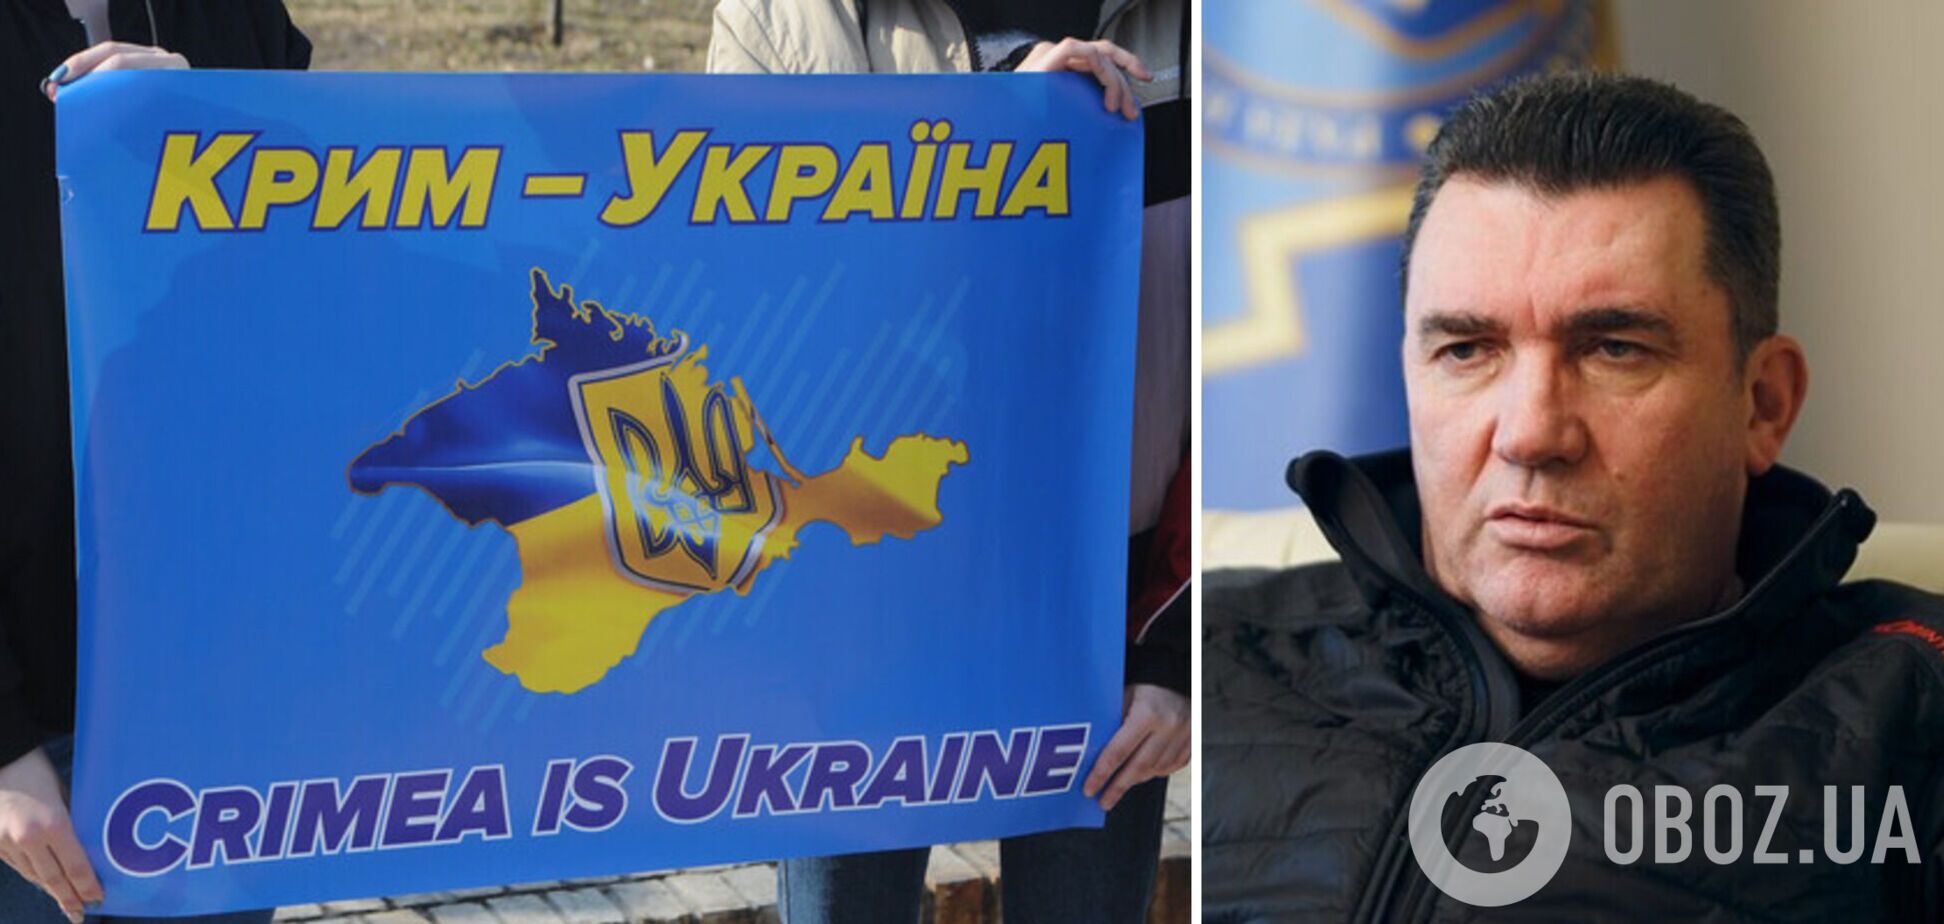 'Сложно говорить, отдадут ли что-то россияне без боя': Данилов об освобождении Крыма